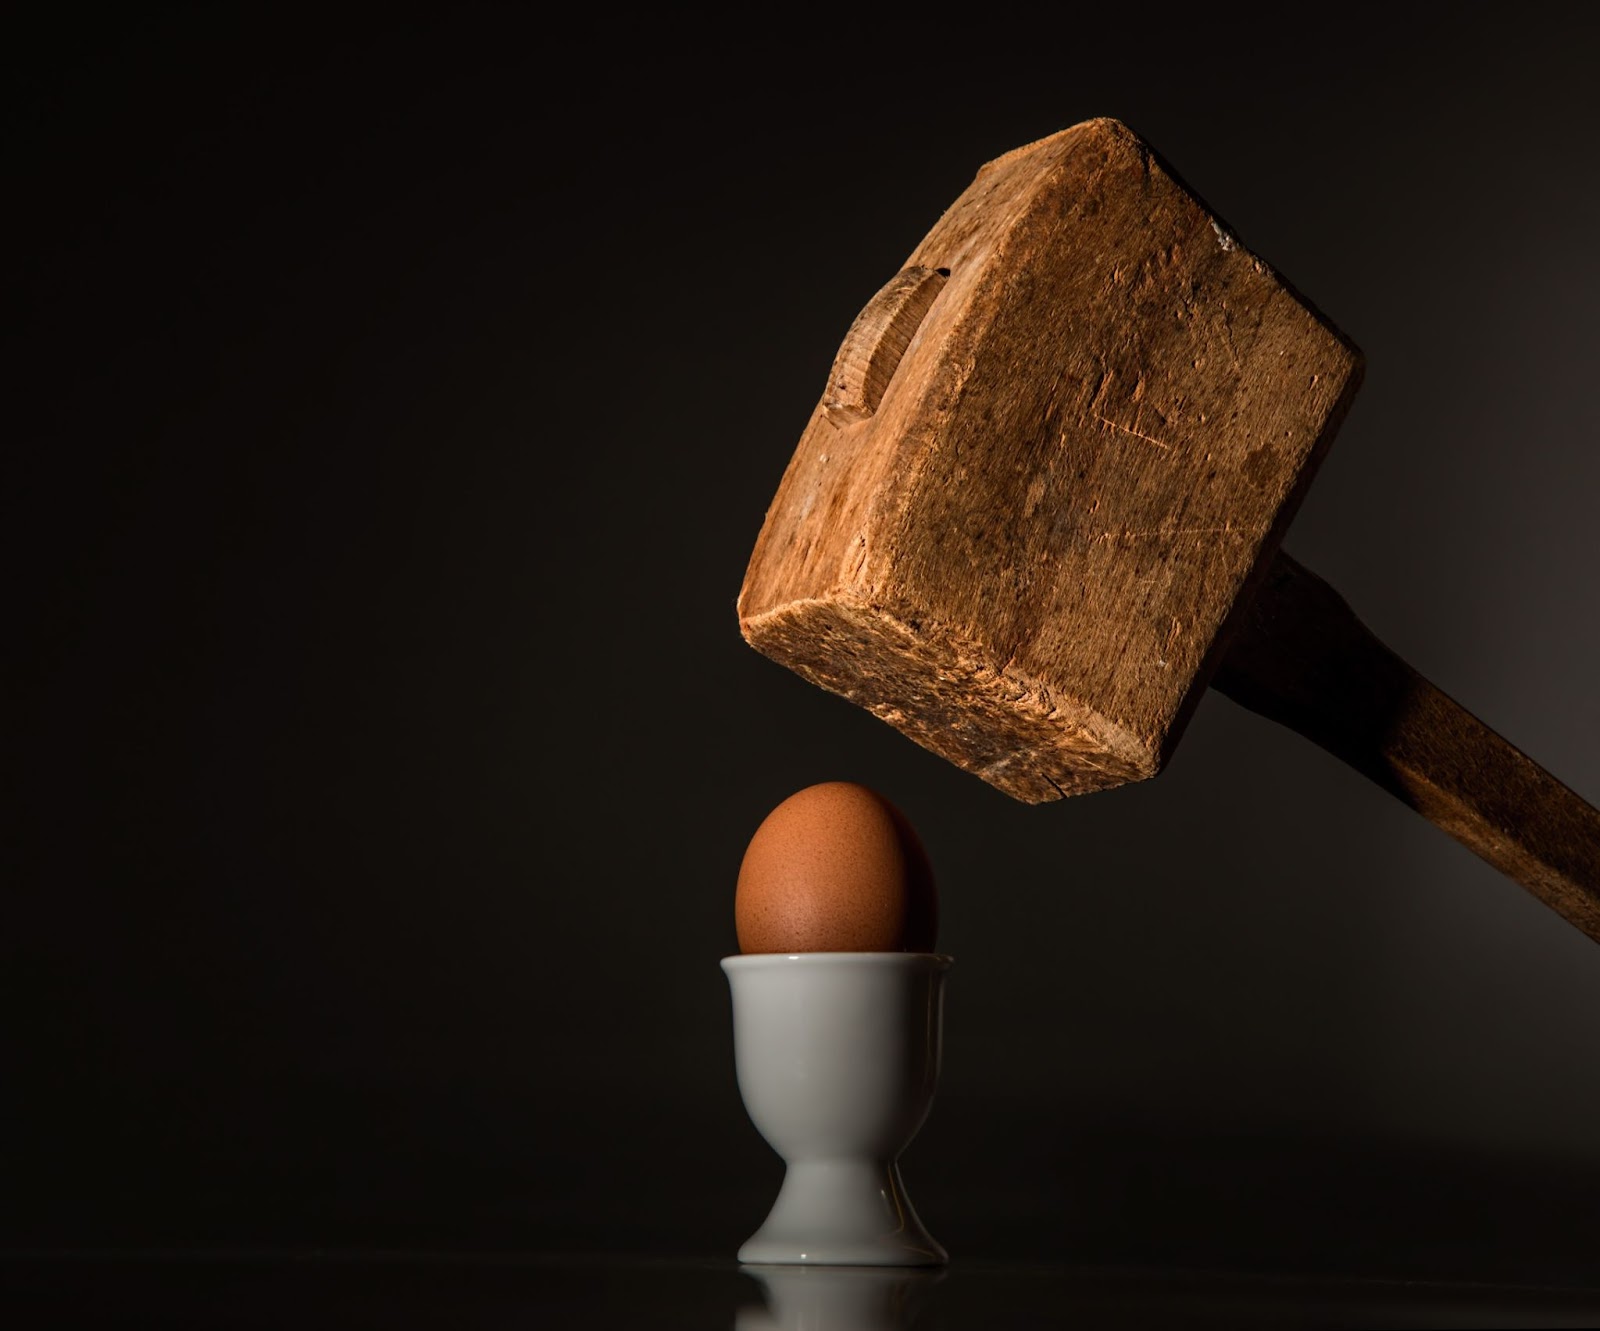 Hammer cracking an egg